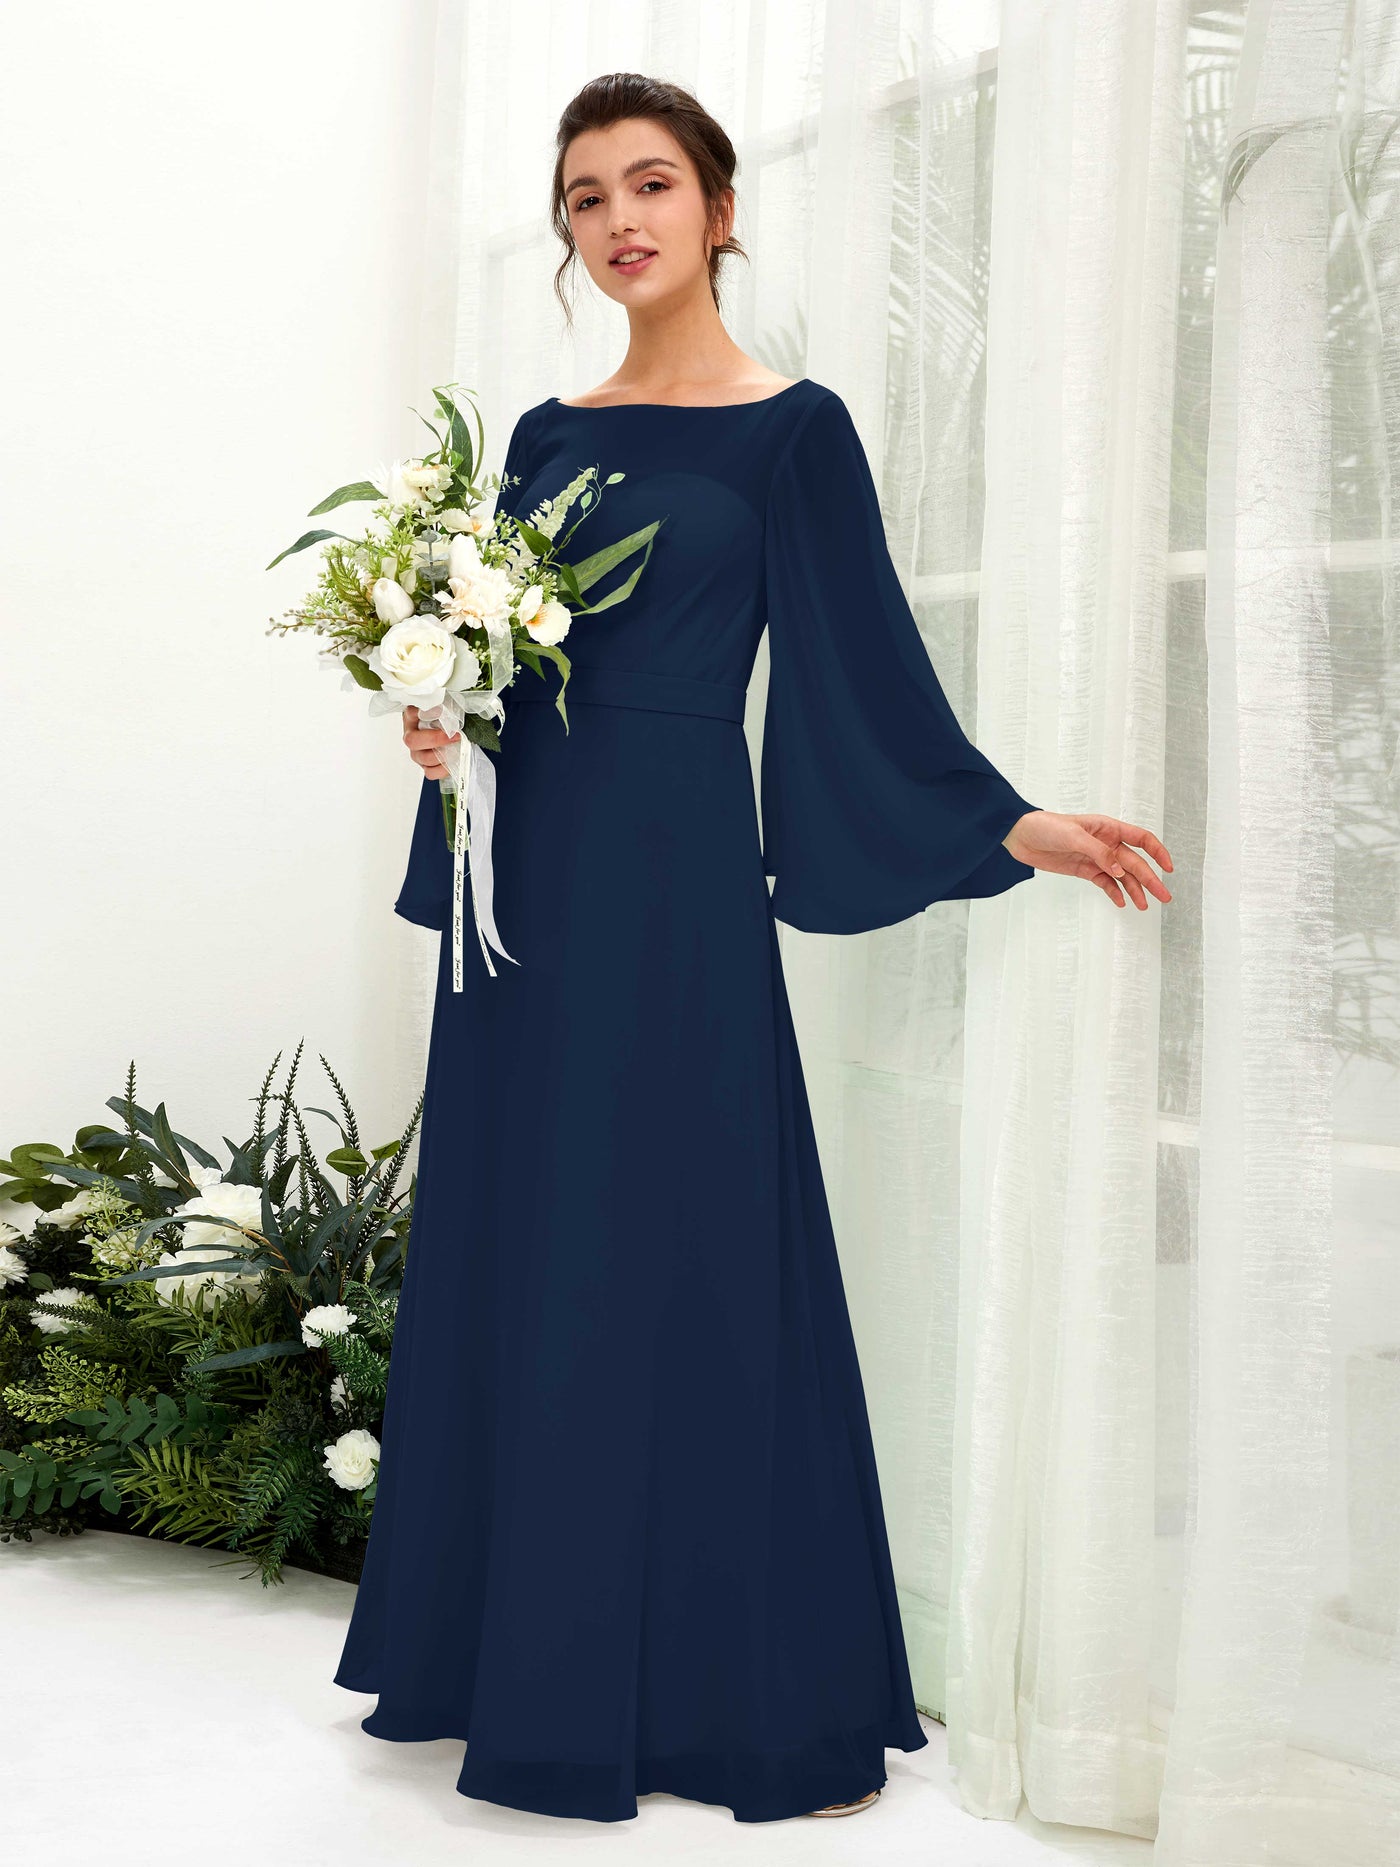 Bateau Illusion Long Sleeves Chiffon Bridesmaid Dress (81220513)#color_navy